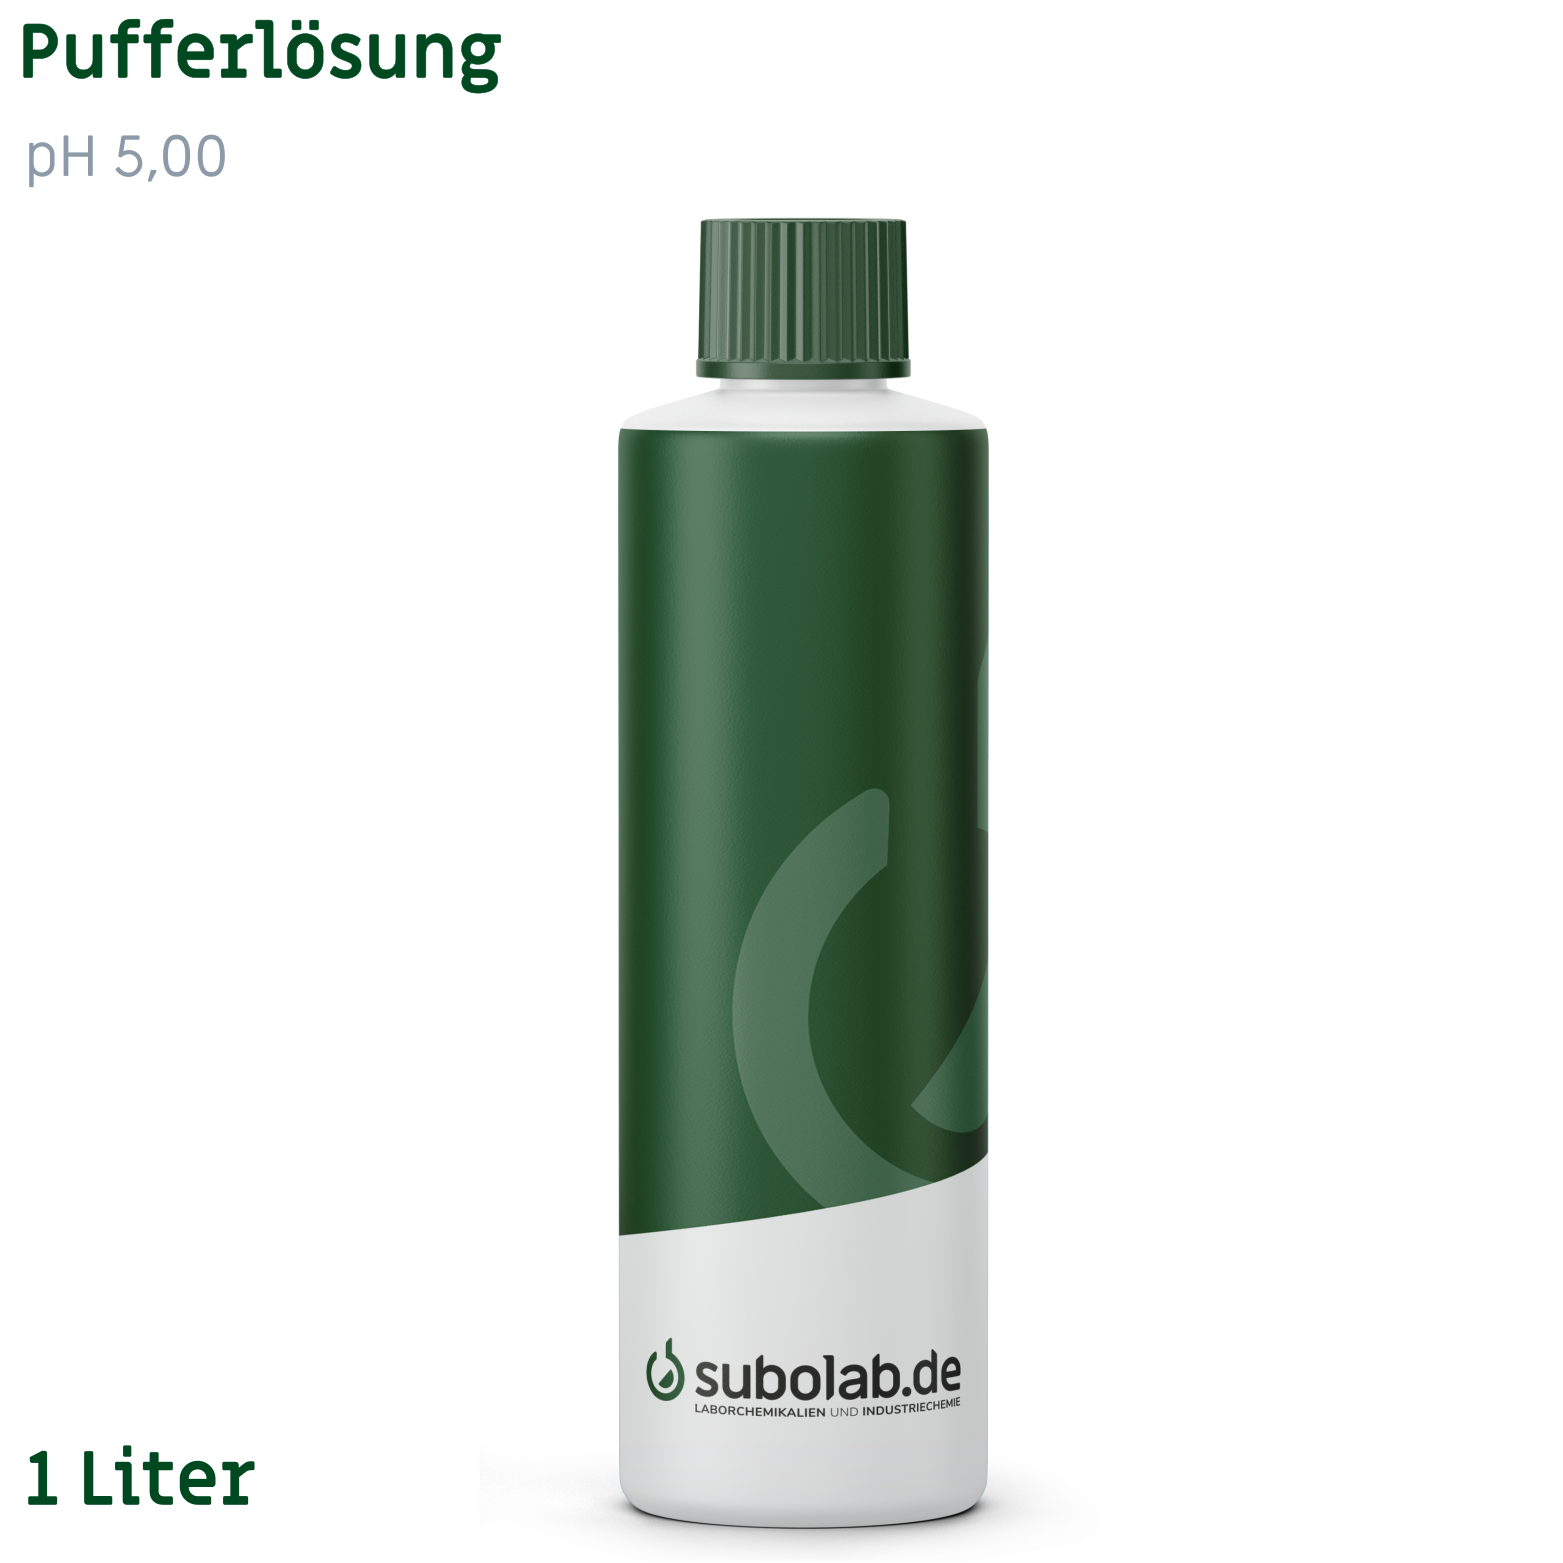 Bild von Pufferlösung pH 5,00 (100 g/L Natronlauge, 240 g/L Essigsäure) (1 Liter)